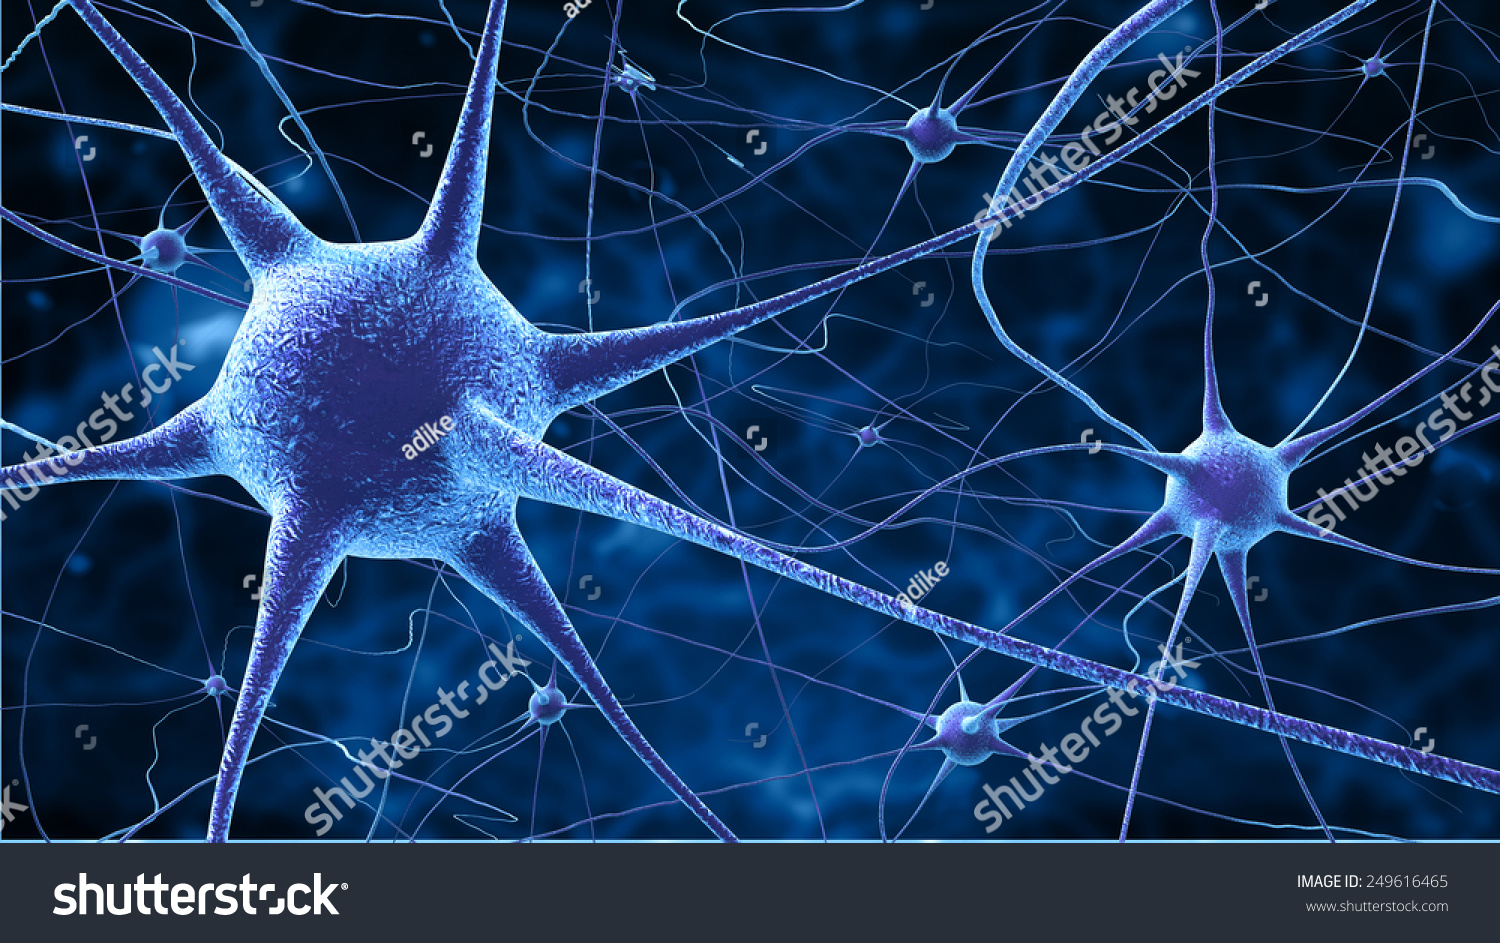 神経細胞 のイラスト素材